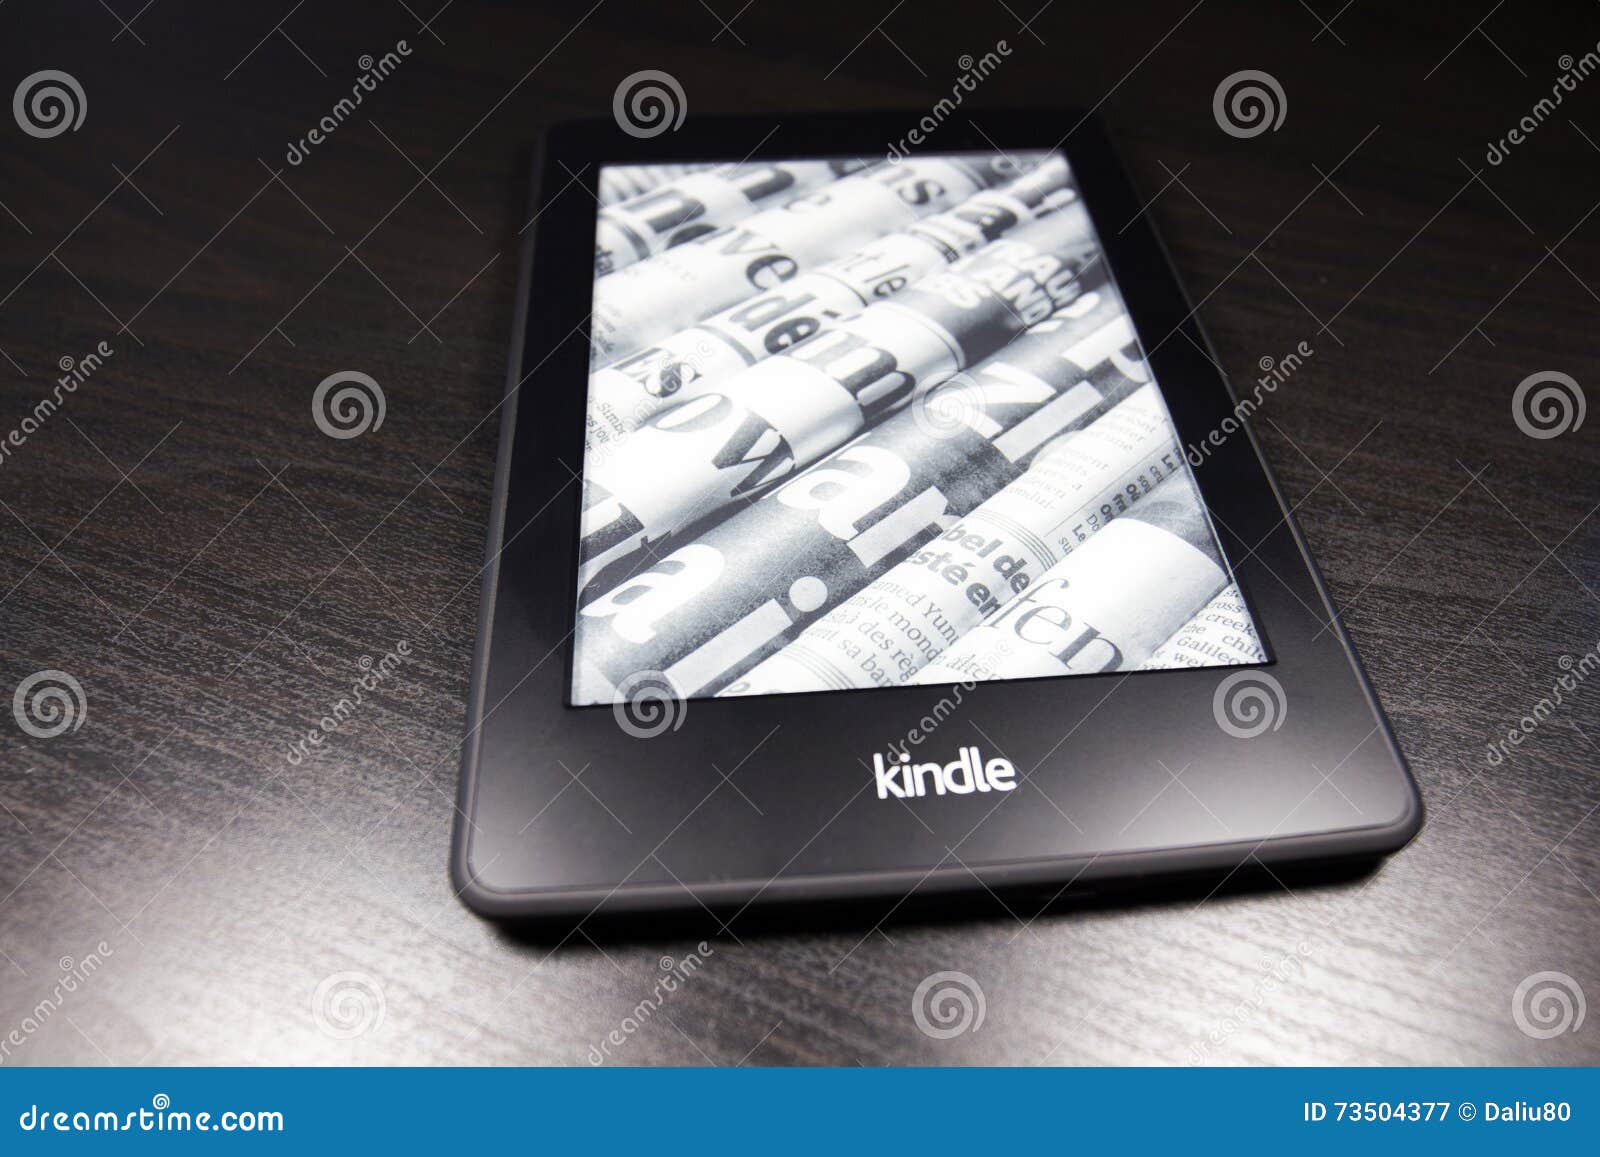 Kindle 4 là đầu đọc sách kỹ thuật số tuyệt vời để mang theo mình bất cứ nơi nào. Với màn hình chống chói và độ phân giải cao, bạn sẽ cảm thấy như đang đọc sách giấy thật. Kindle 4 cũng được trang bị độc quyền công nghệ chống lóa, cho phép bạn đọc ở bất kỳ điều kiện ánh sáng nào.